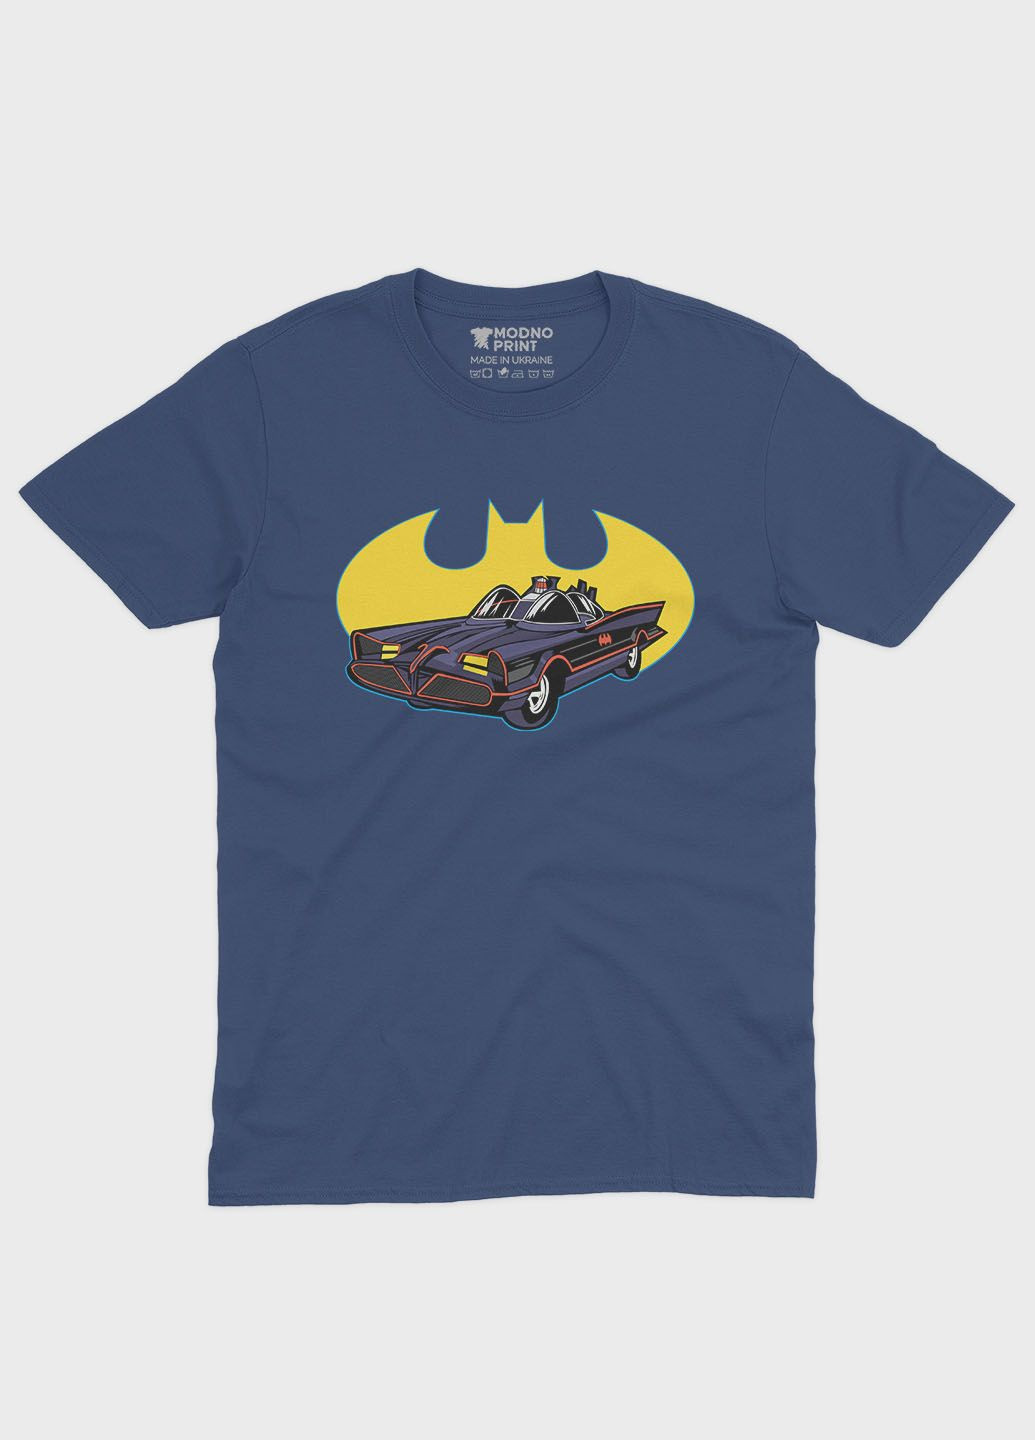 Темно-синяя демисезонная футболка для мальчика с принтом супергероя - бэтмен (ts001-1-nav-006-003-034-b) Modno